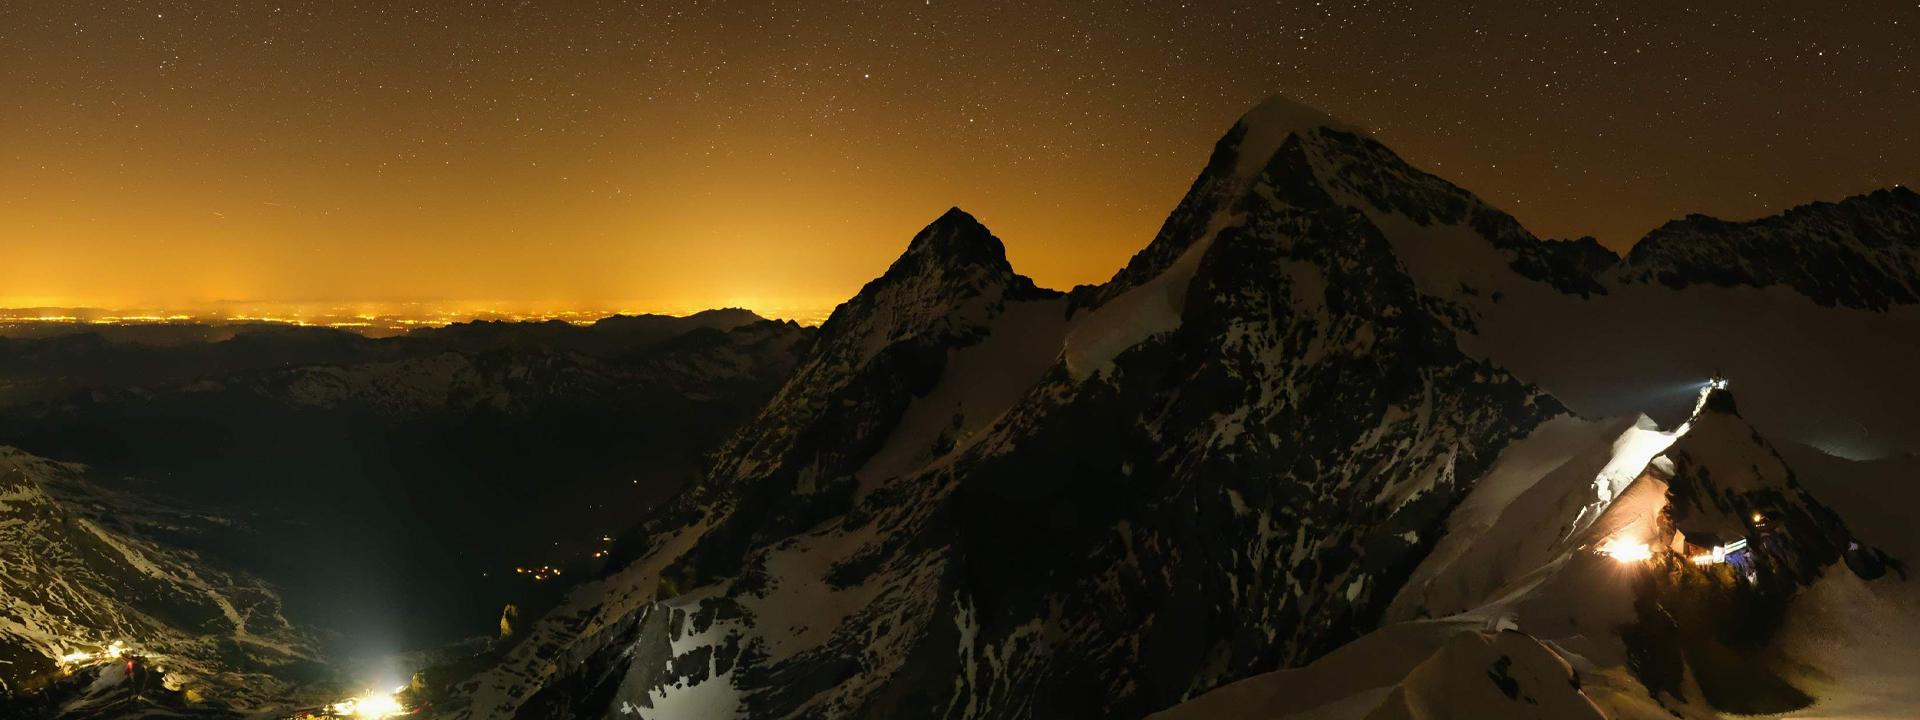 Image de webcam Jungfraujoch crête est dans la nuit